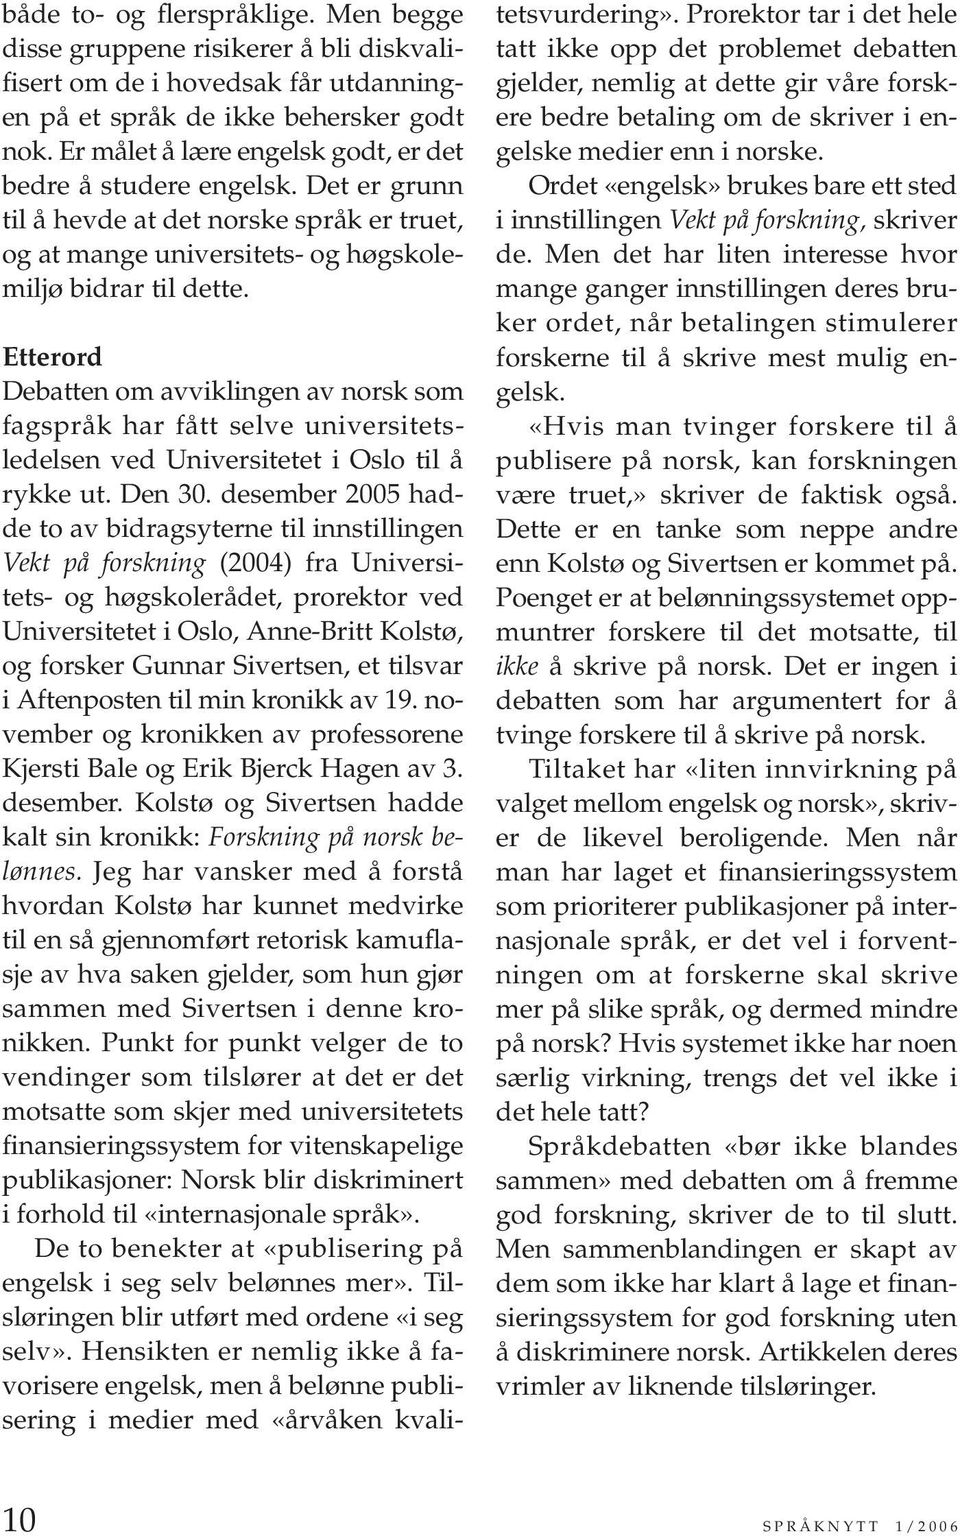 Etterord Debatten om avviklingen av norsk som fagspråk har fått selve universitetsledelsen ved Universitetet i Oslo til å rykke ut. Den 30.